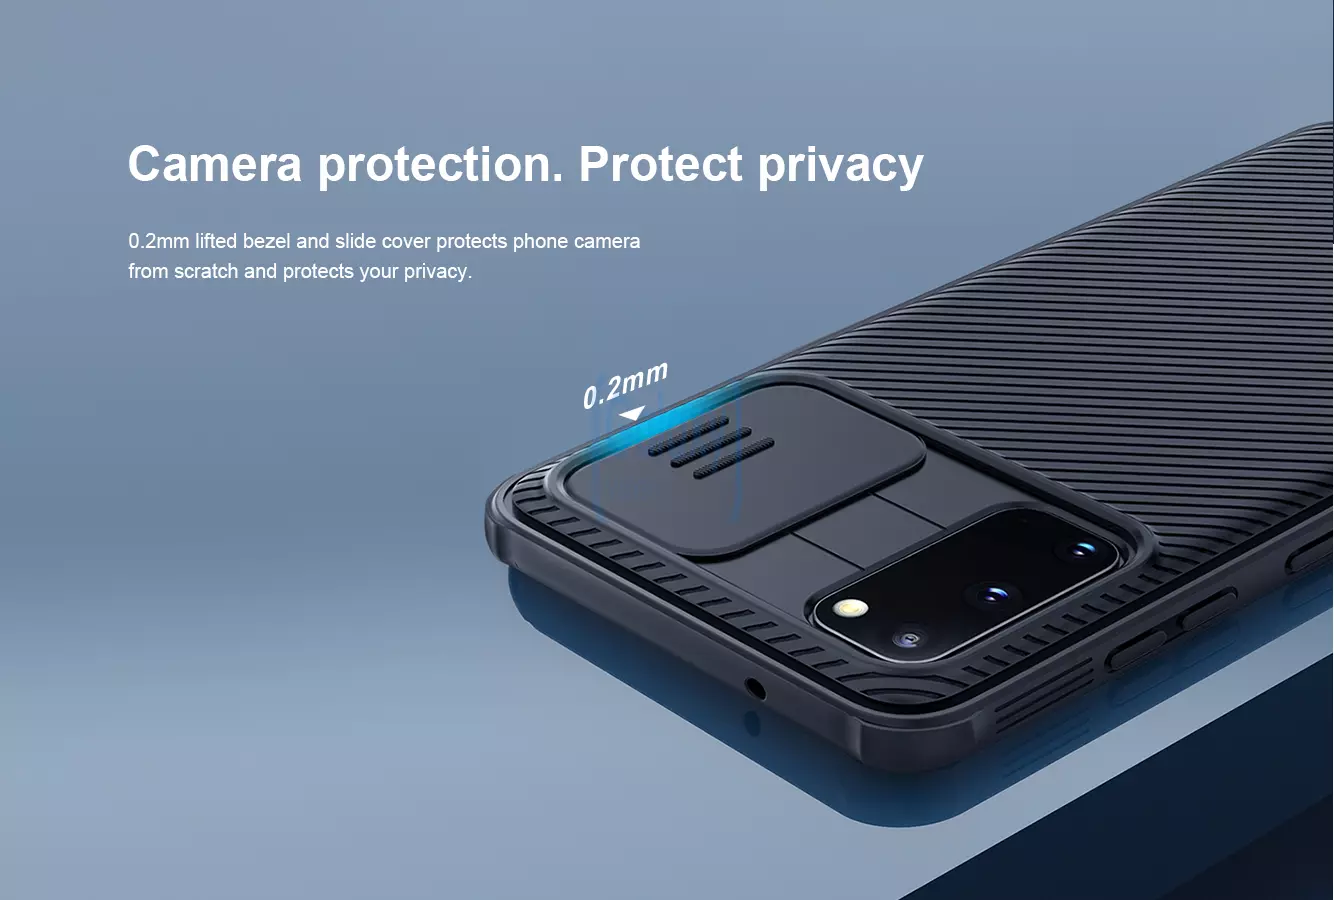 Чехол бампер Nillkin CamShield Case для Samsung Galaxy S20 Black (Черный)